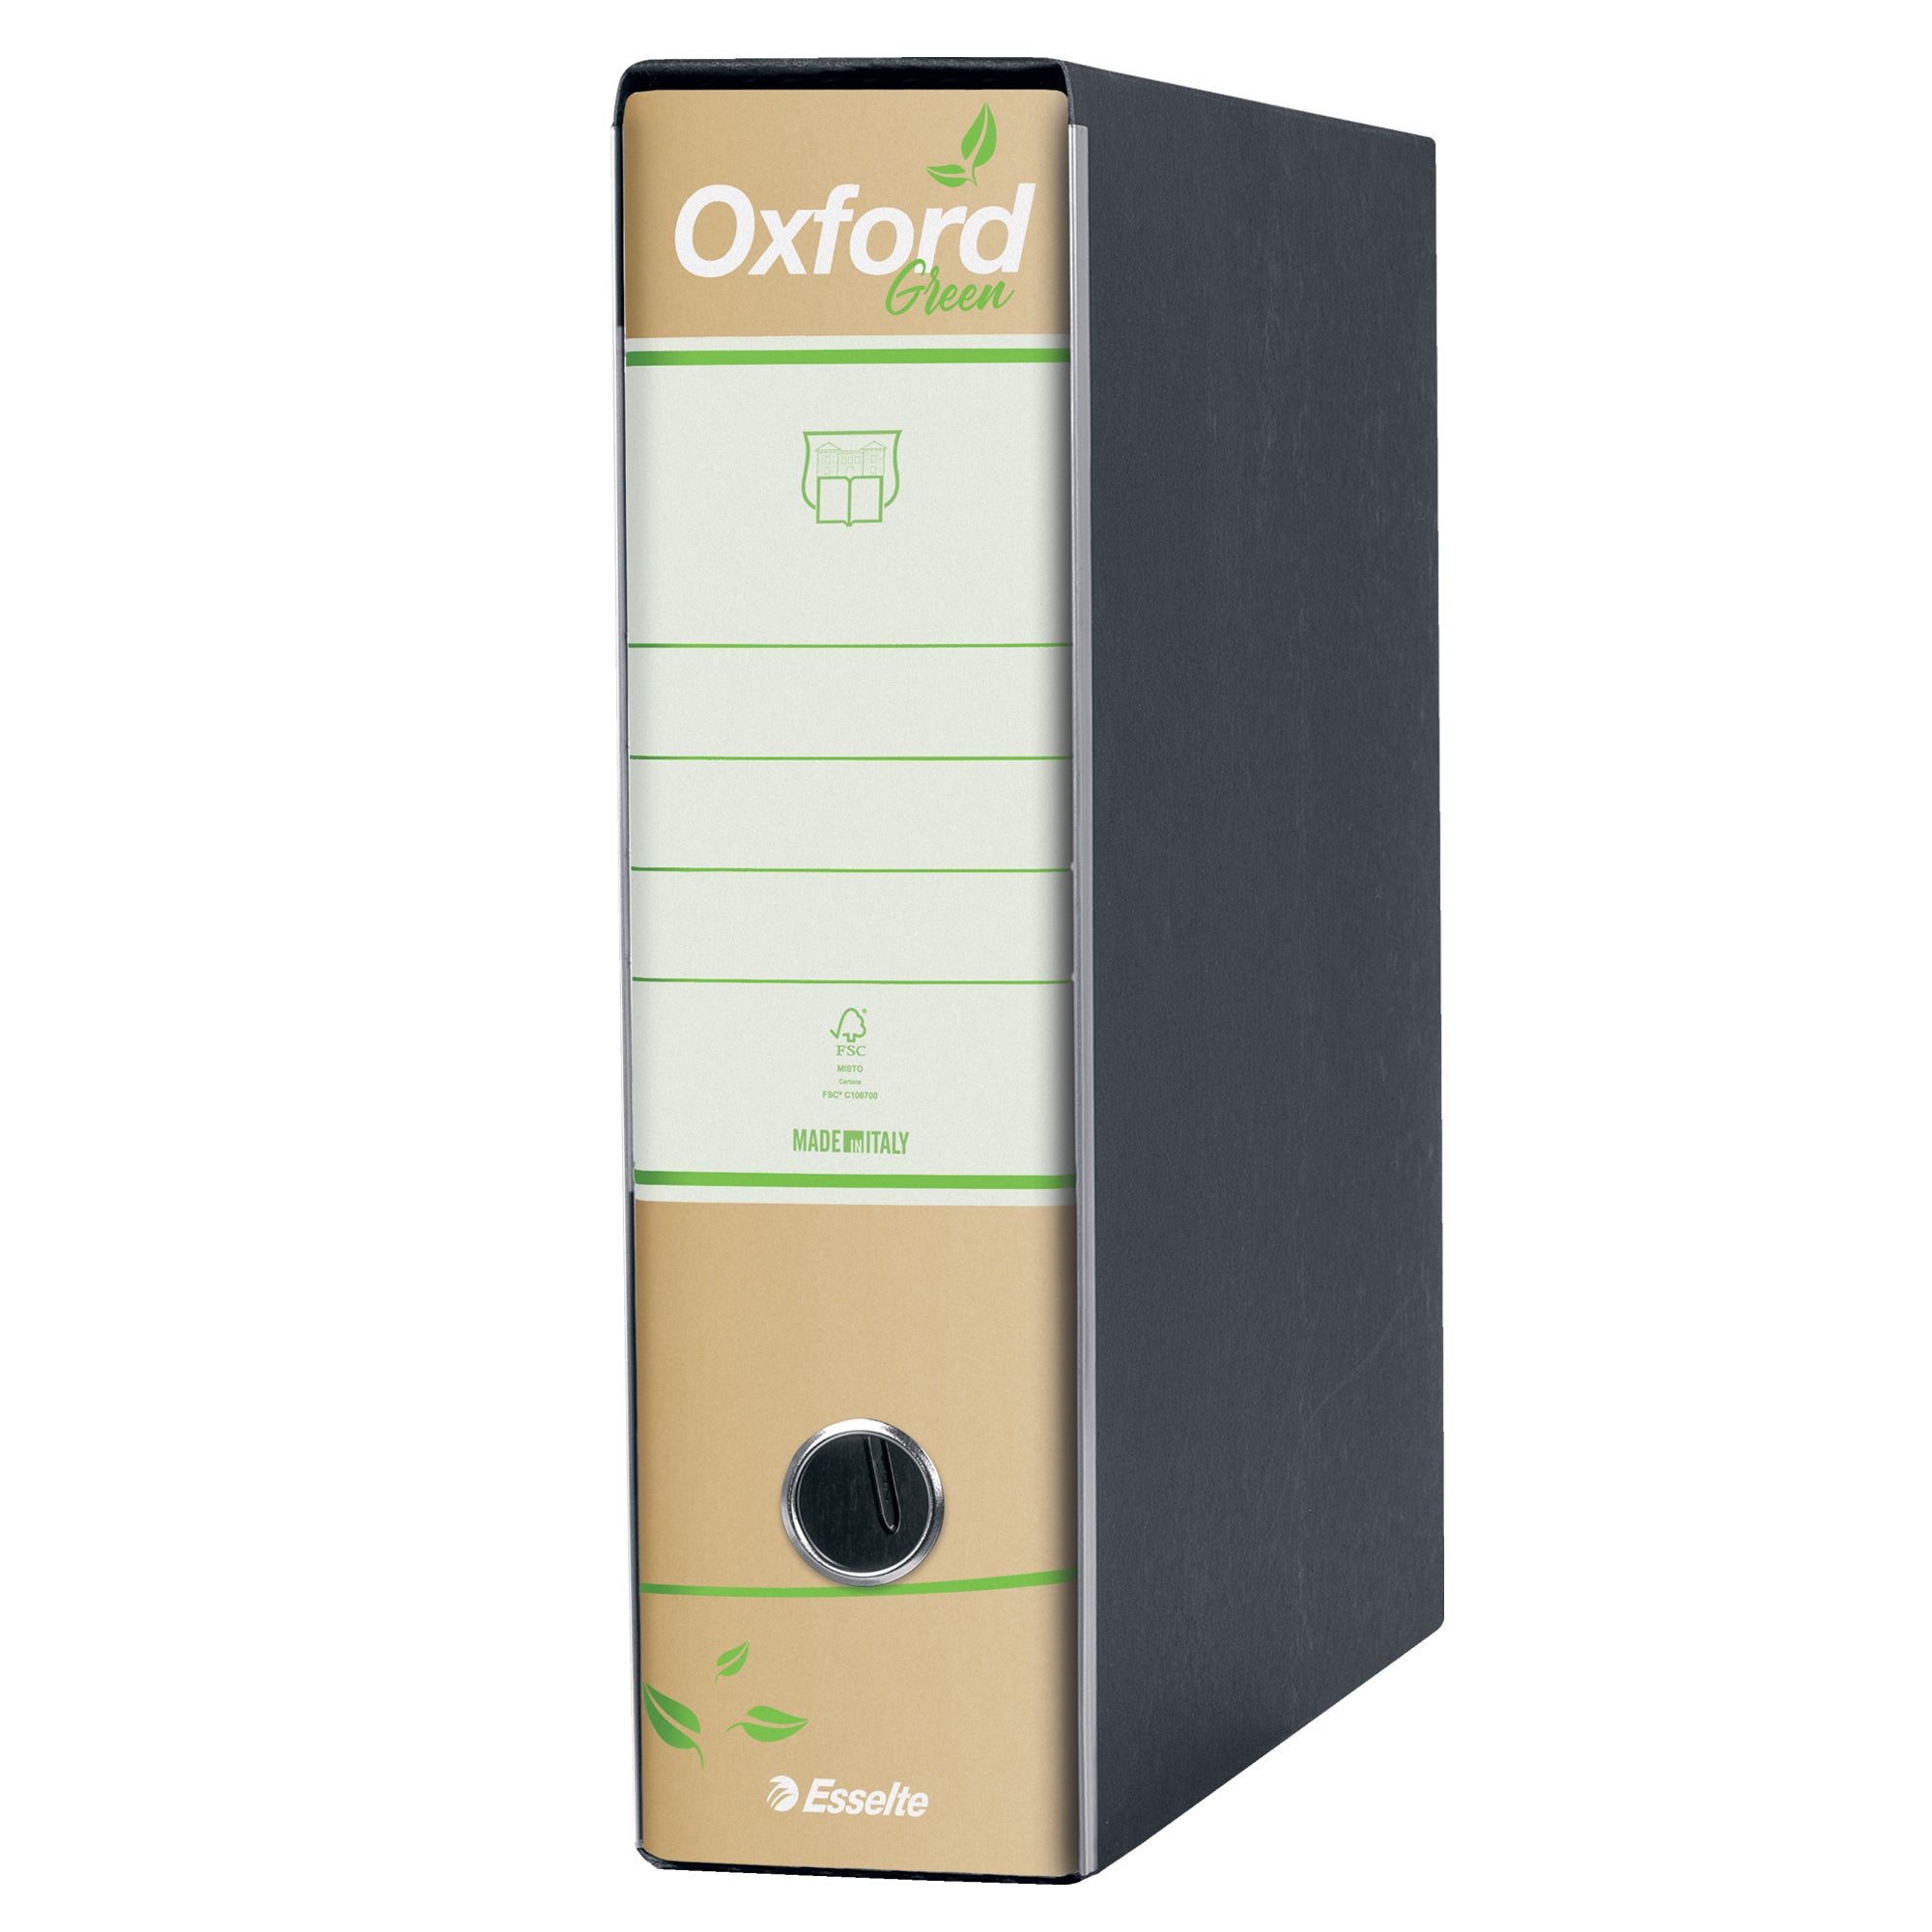 esselte-registratore-oxford-green-g83-avana-dorso-8cm-f-to-commerciale